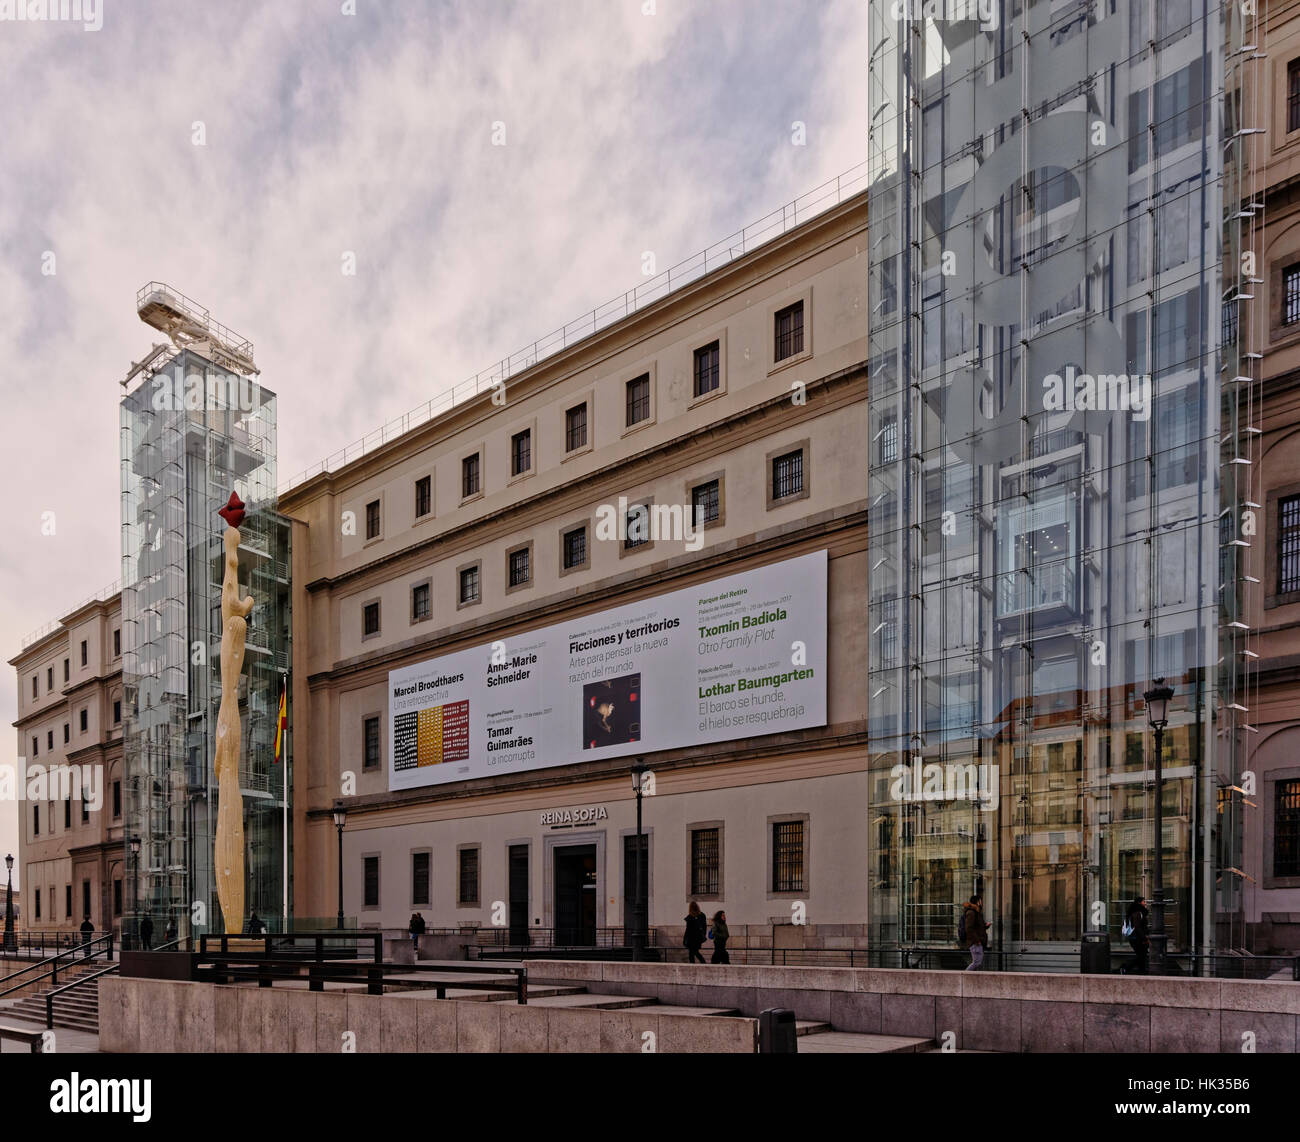 Madrid, Espagne - 19 janvier 2017 : Le Museo Nacional Centro de Arte Reina Sofia, façade Banque D'Images